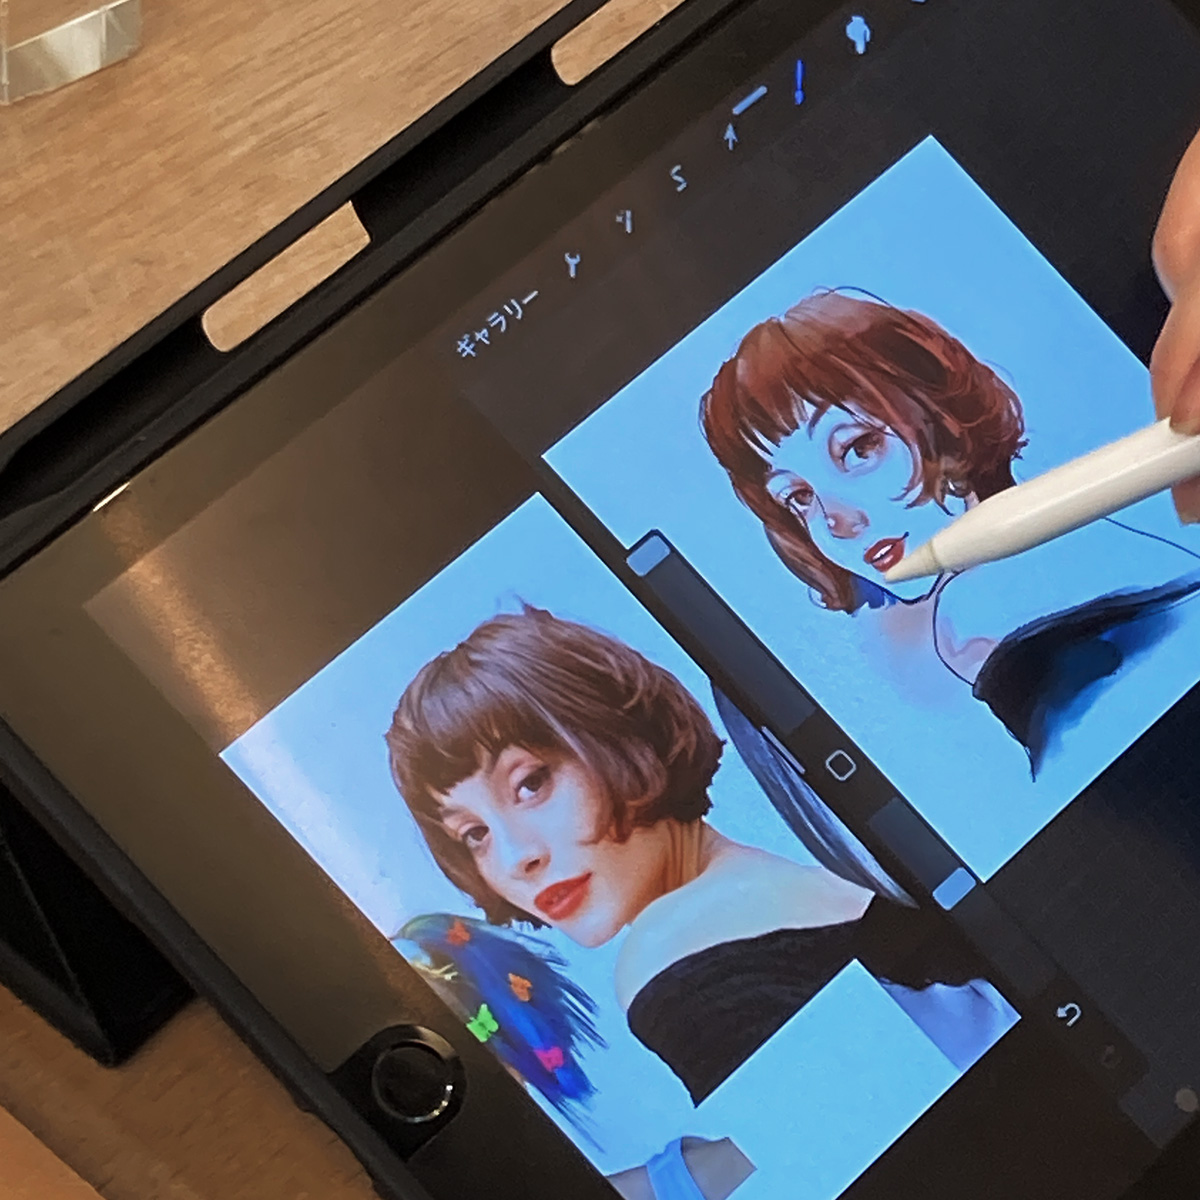 iPadイラスト徹底したマンツーマン指導|ファッションイラスト・おしゃれイラスト絵画教室|スタジオトリコ|東京|